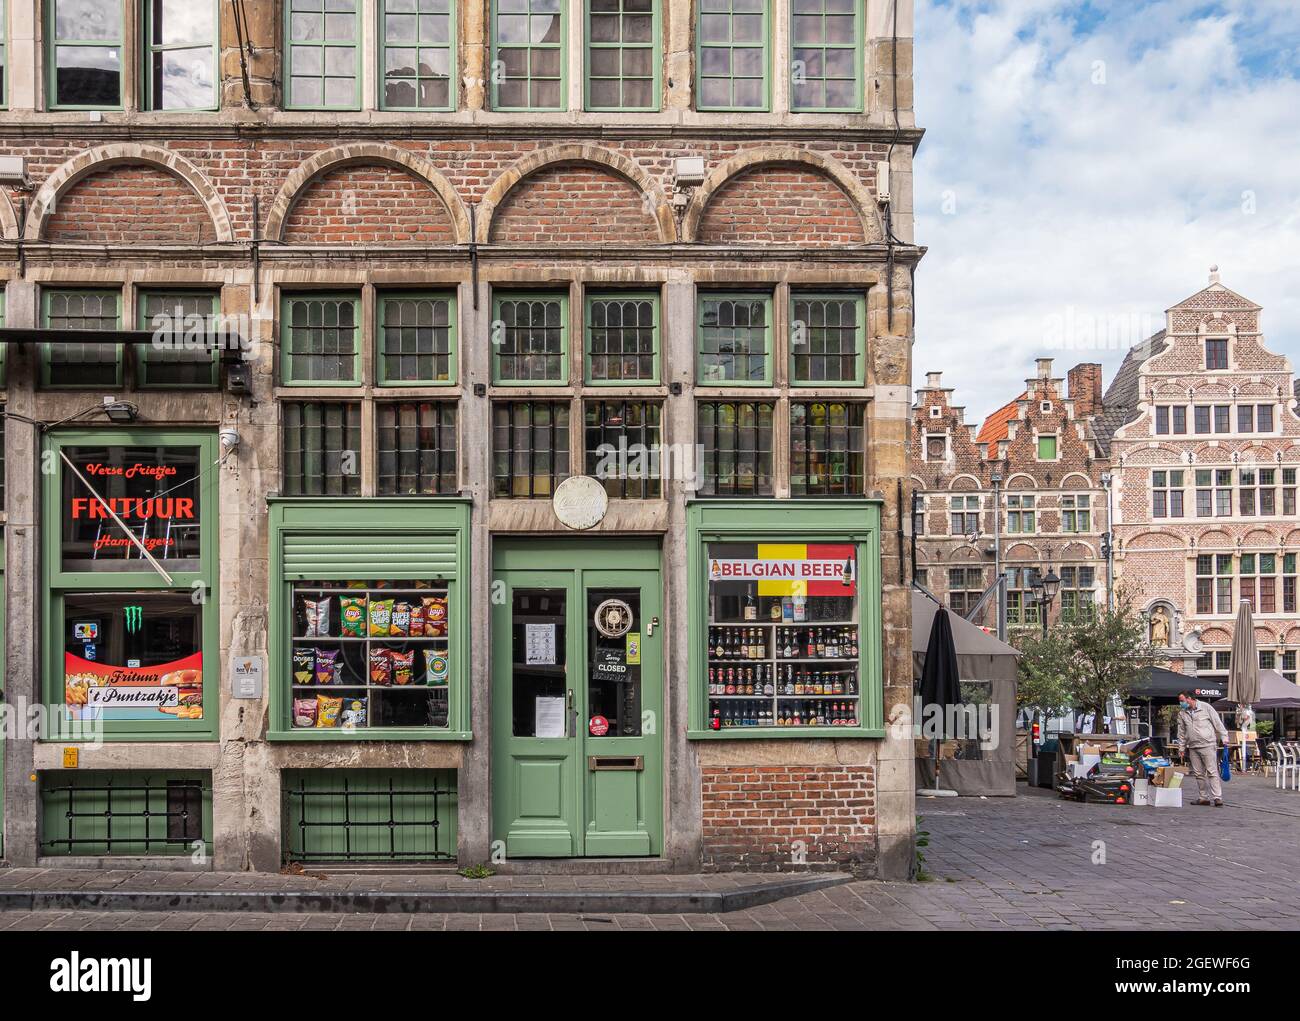 Gand, Flandre, Belgique - 30 juillet 2021 : maison historique vend de la bière belge et des frites dans 2 boutiques au niveau de la rue, au coin de la rue Sint Veerleplein Banque D'Images